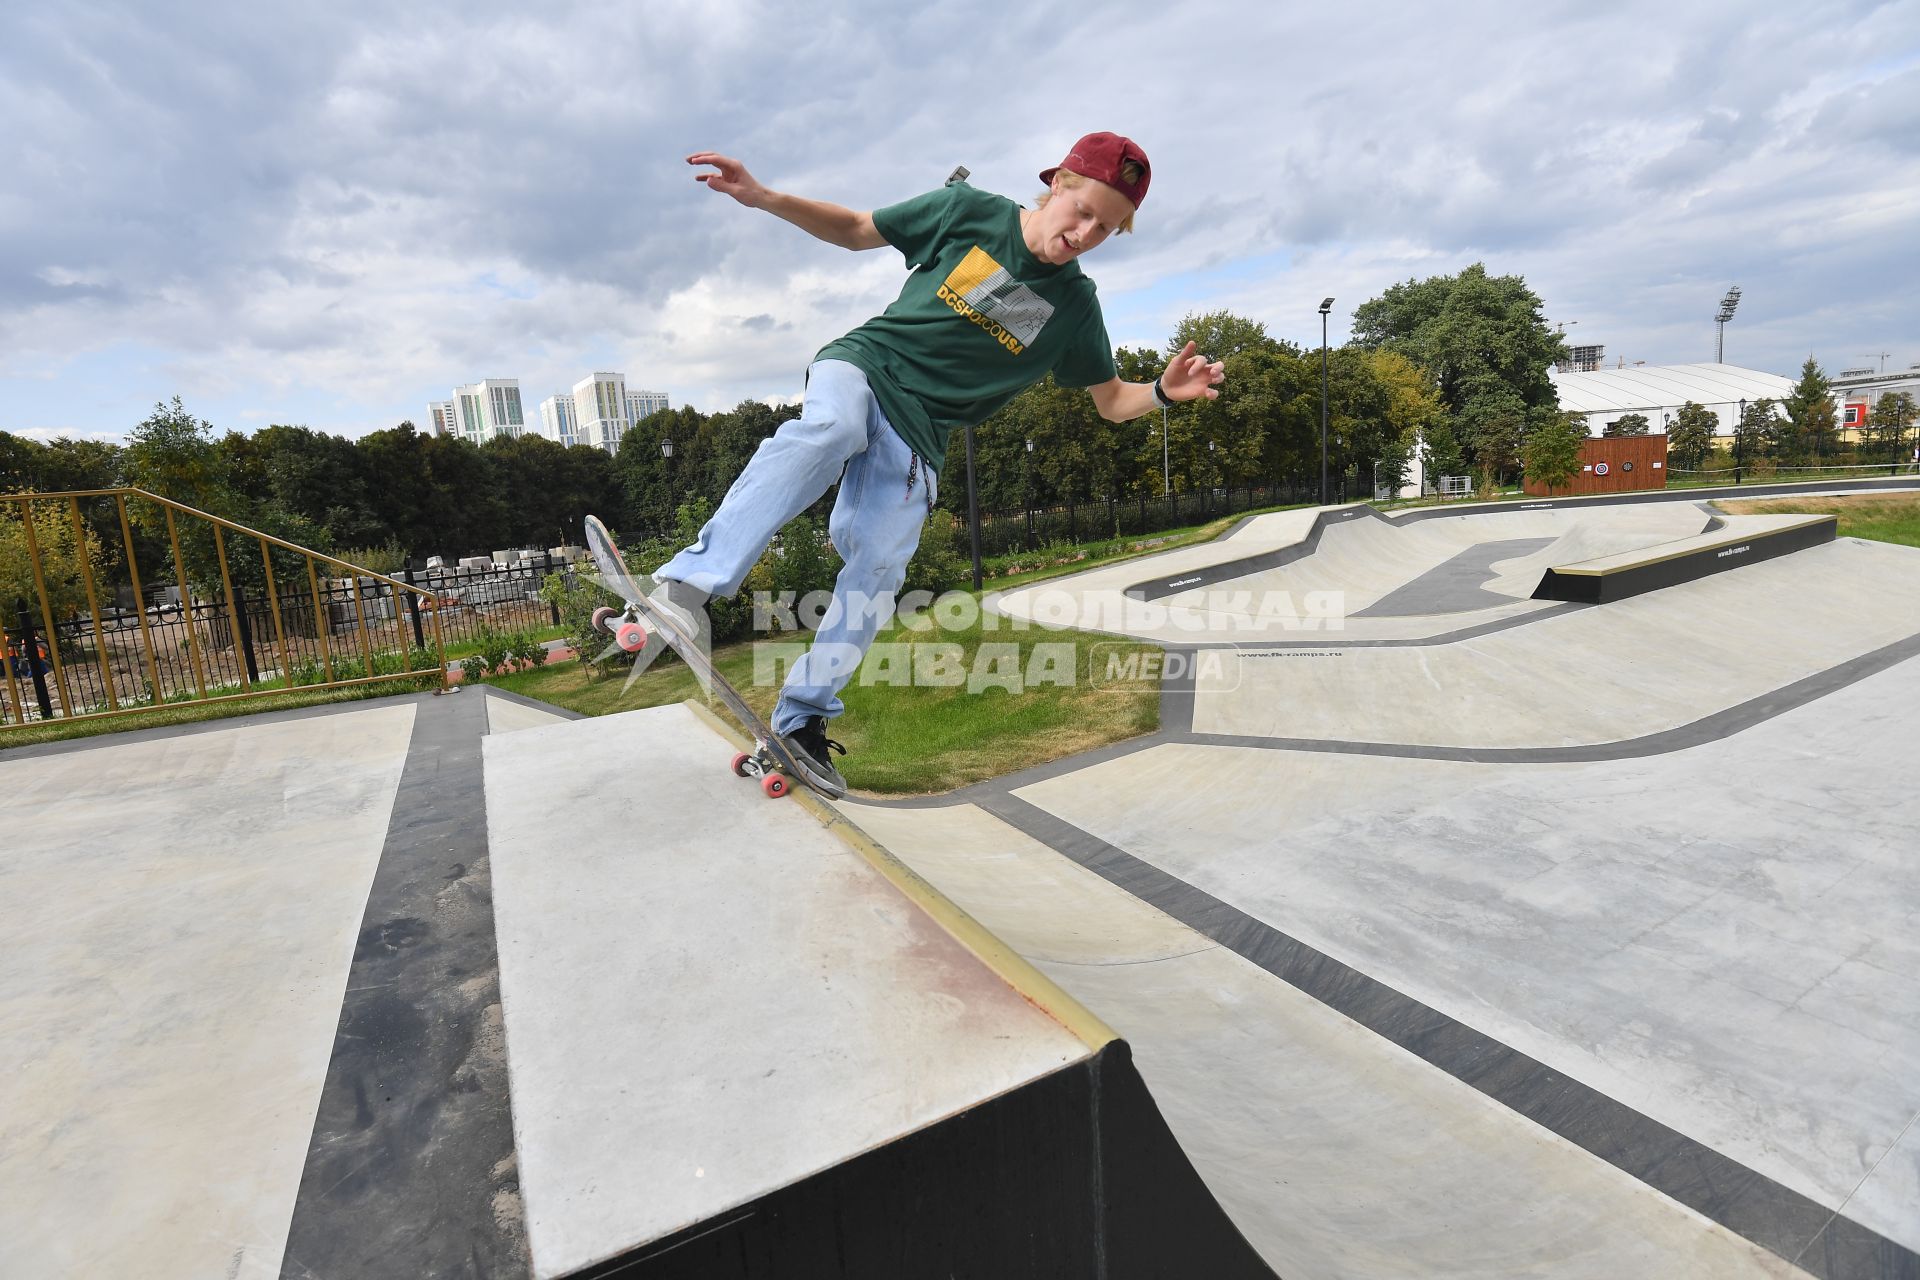 Москва. Юноша катается на скейт-борде  на площадке для экстремальных видов спорта в Детском Черкизовском парке.